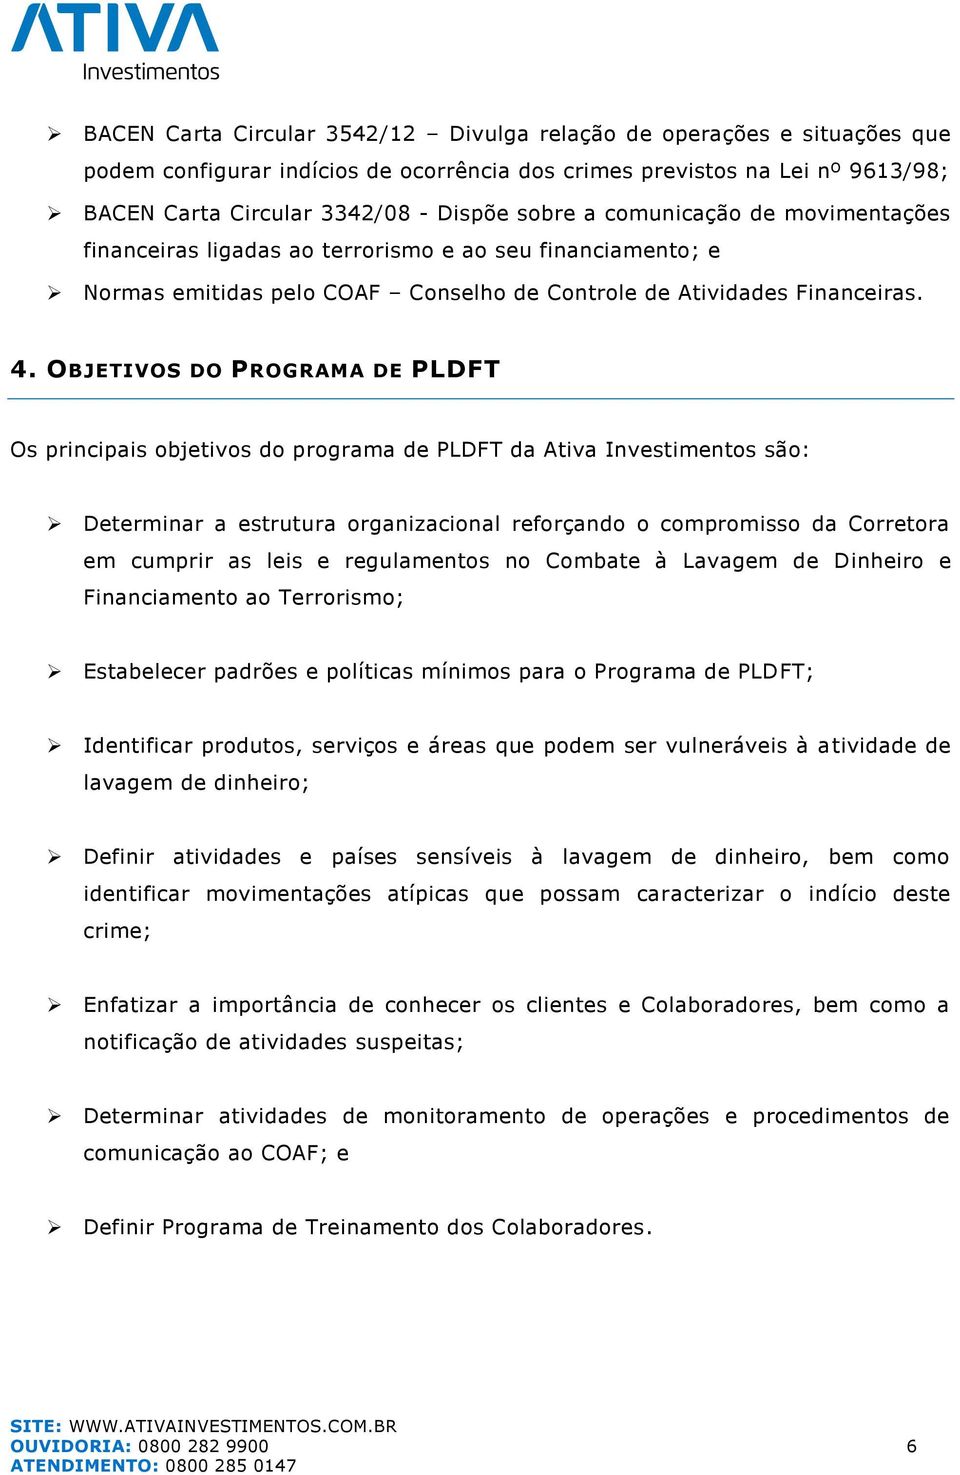 OBJETIVOS DO PROGRAMA DE PLDFT Os principais objetivos do programa de PLDFT da Ativa Investimentos são: Determinar a estrutura organizacional reforçando o compromisso da Corretora em cumprir as leis